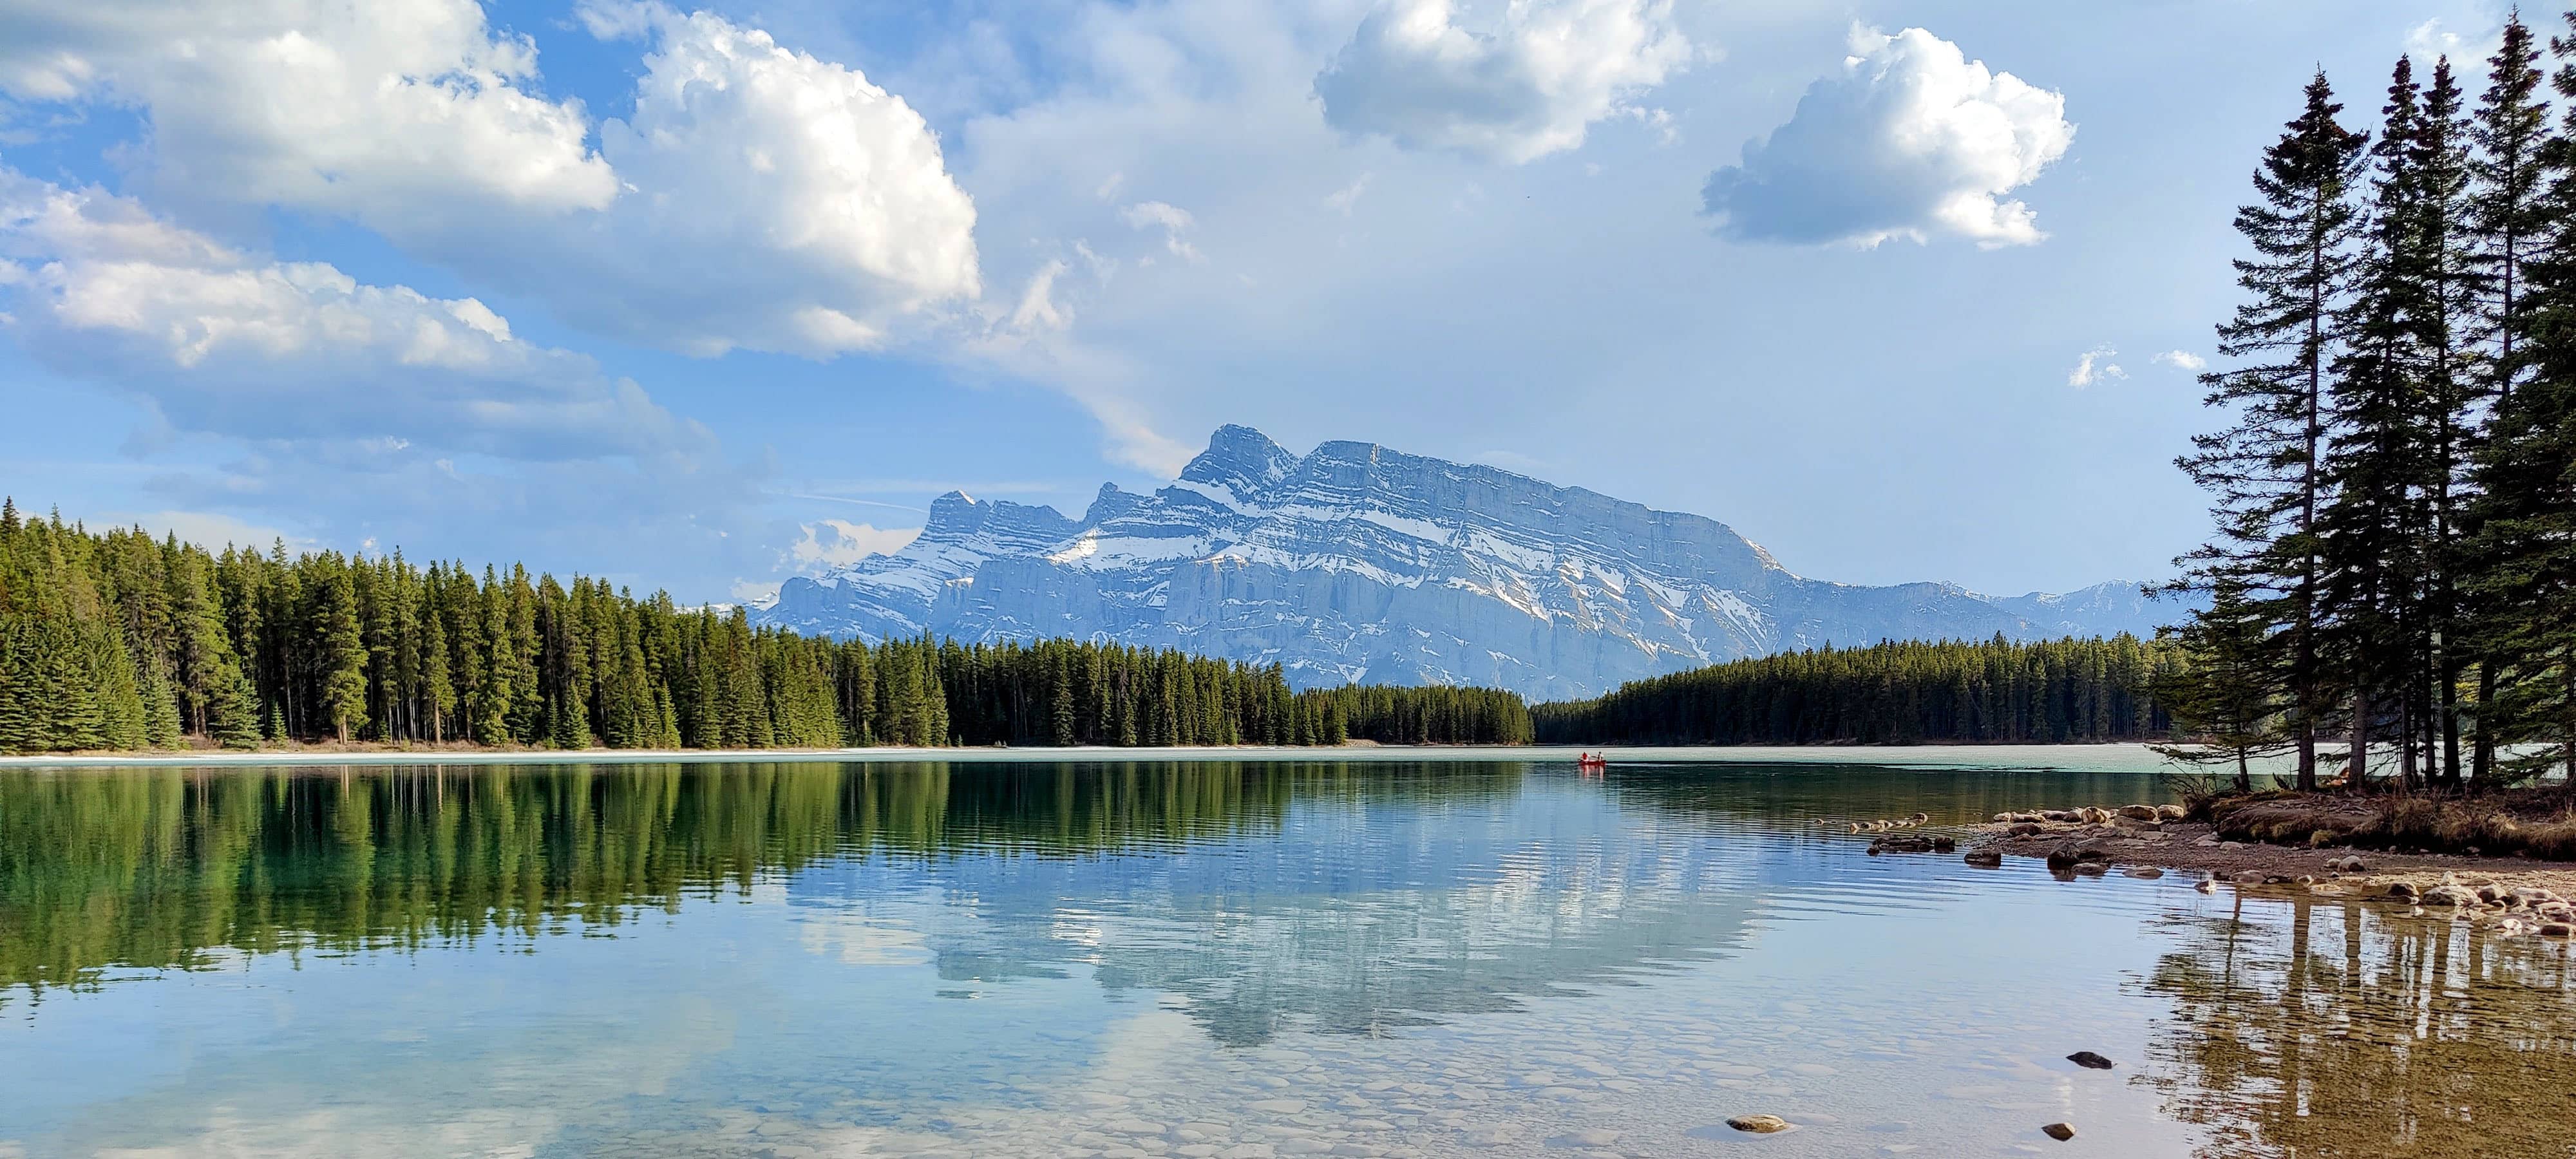 Banner image of Banff National Park